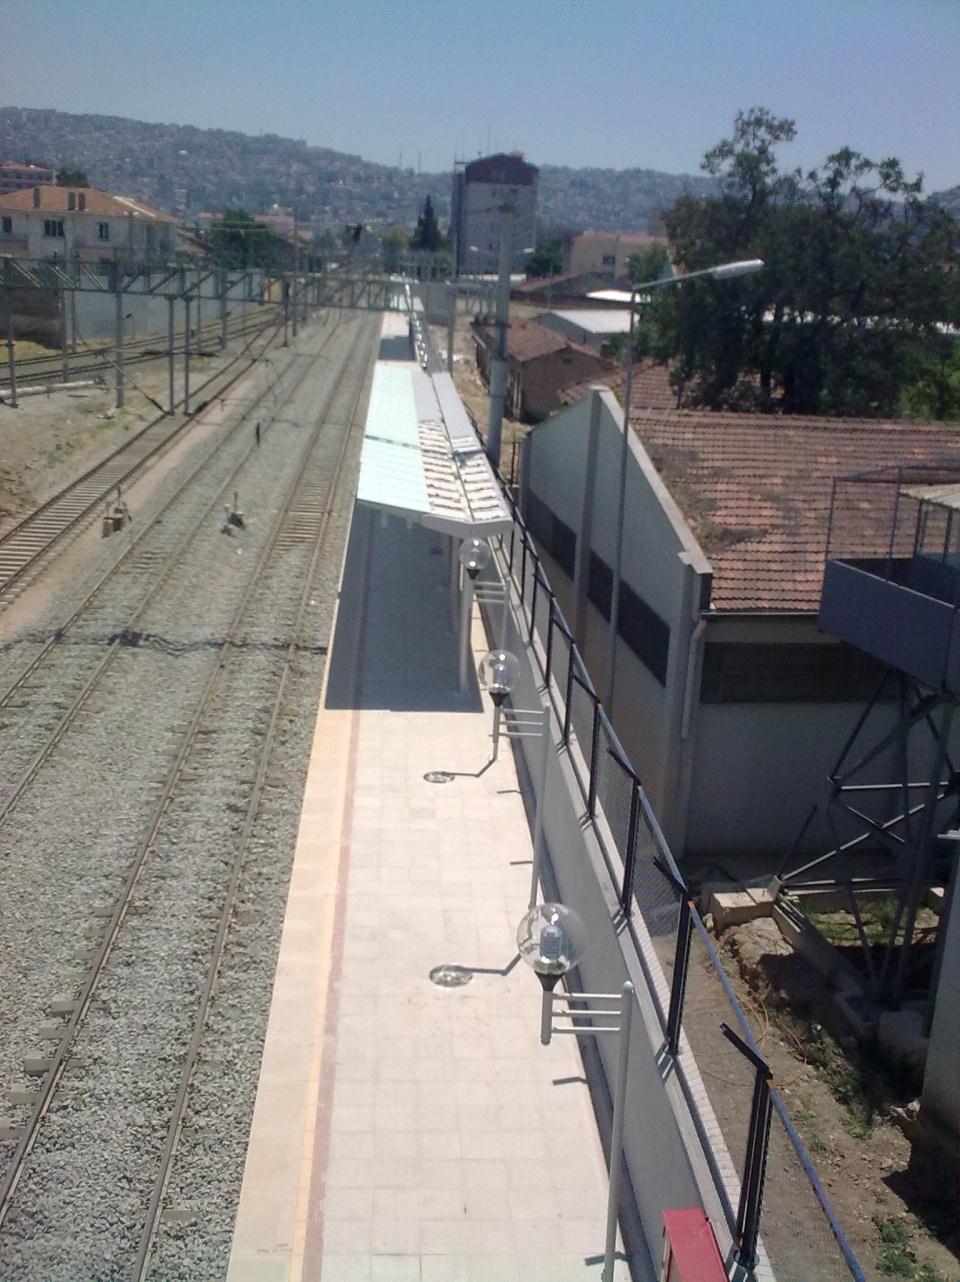 İBSGP Kapsamında Akıncılar Karayolu Altgeçidi ile Hilal Aktarma İstasyonu yapım işi; Banliyö Sisteminin Geliştirilmesi Projesi kapsamında işletmeye alınan İzmir Banliyö Sistemi, Metro İşletmesi ile